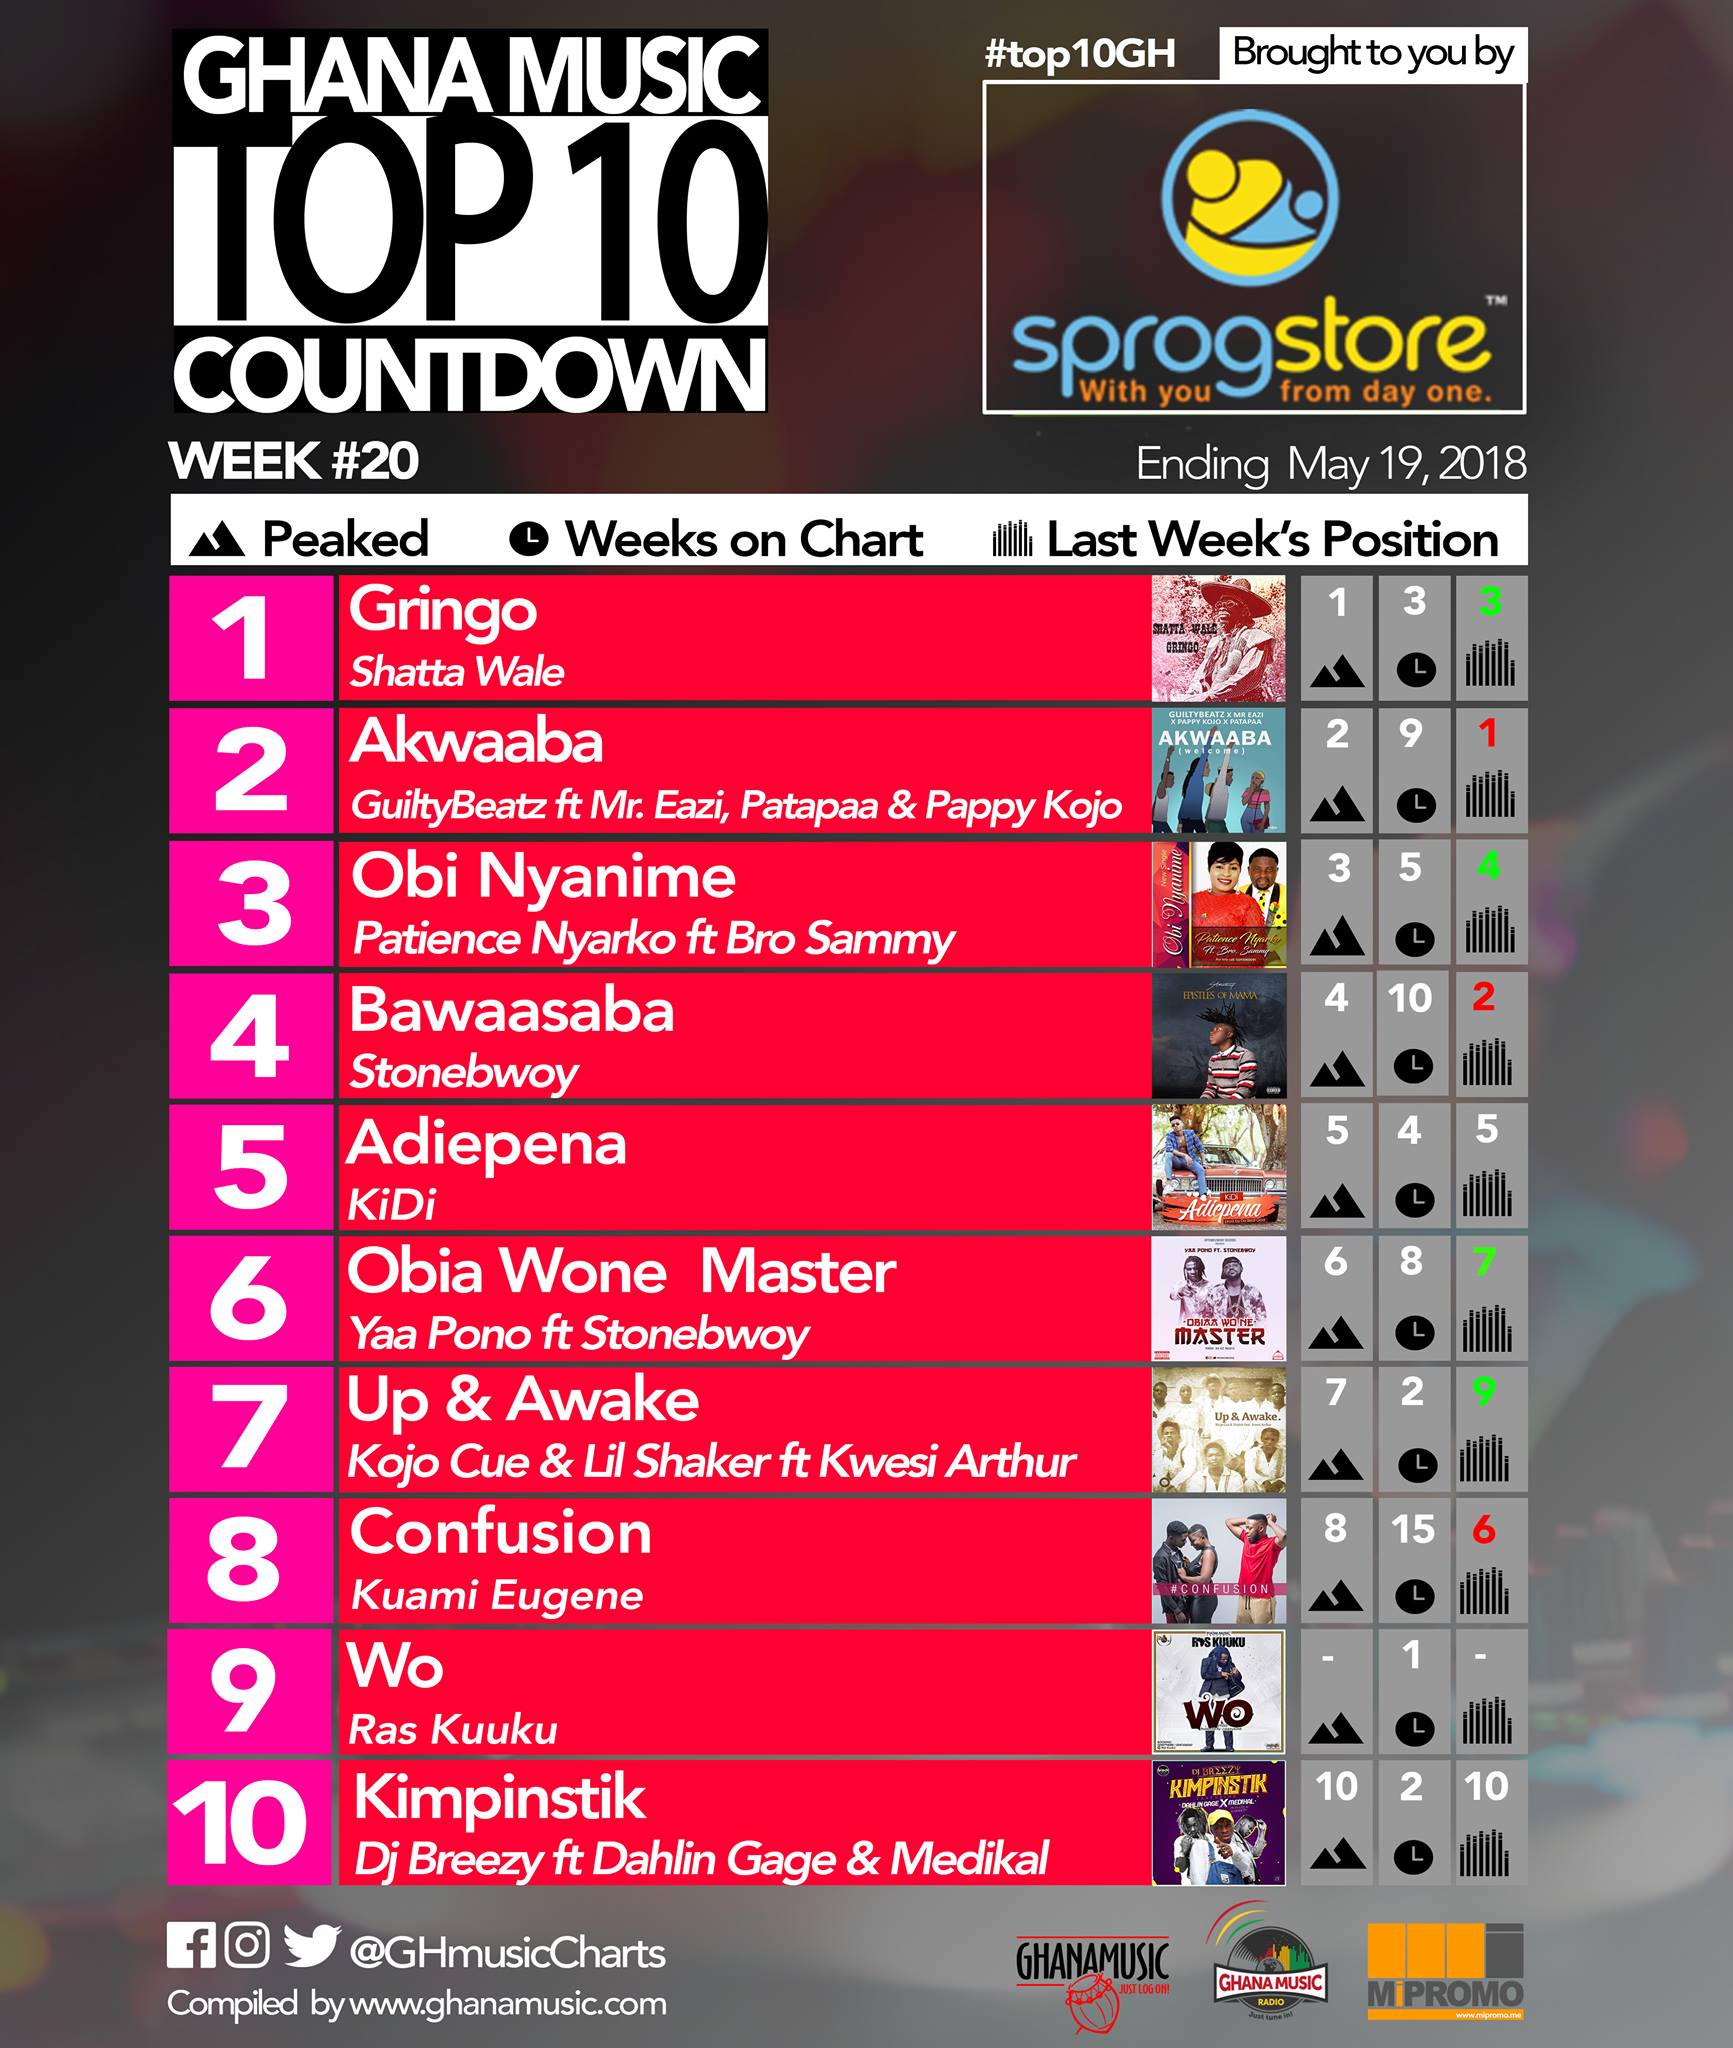 Week #20: Ghana Music Top 10 Countdown